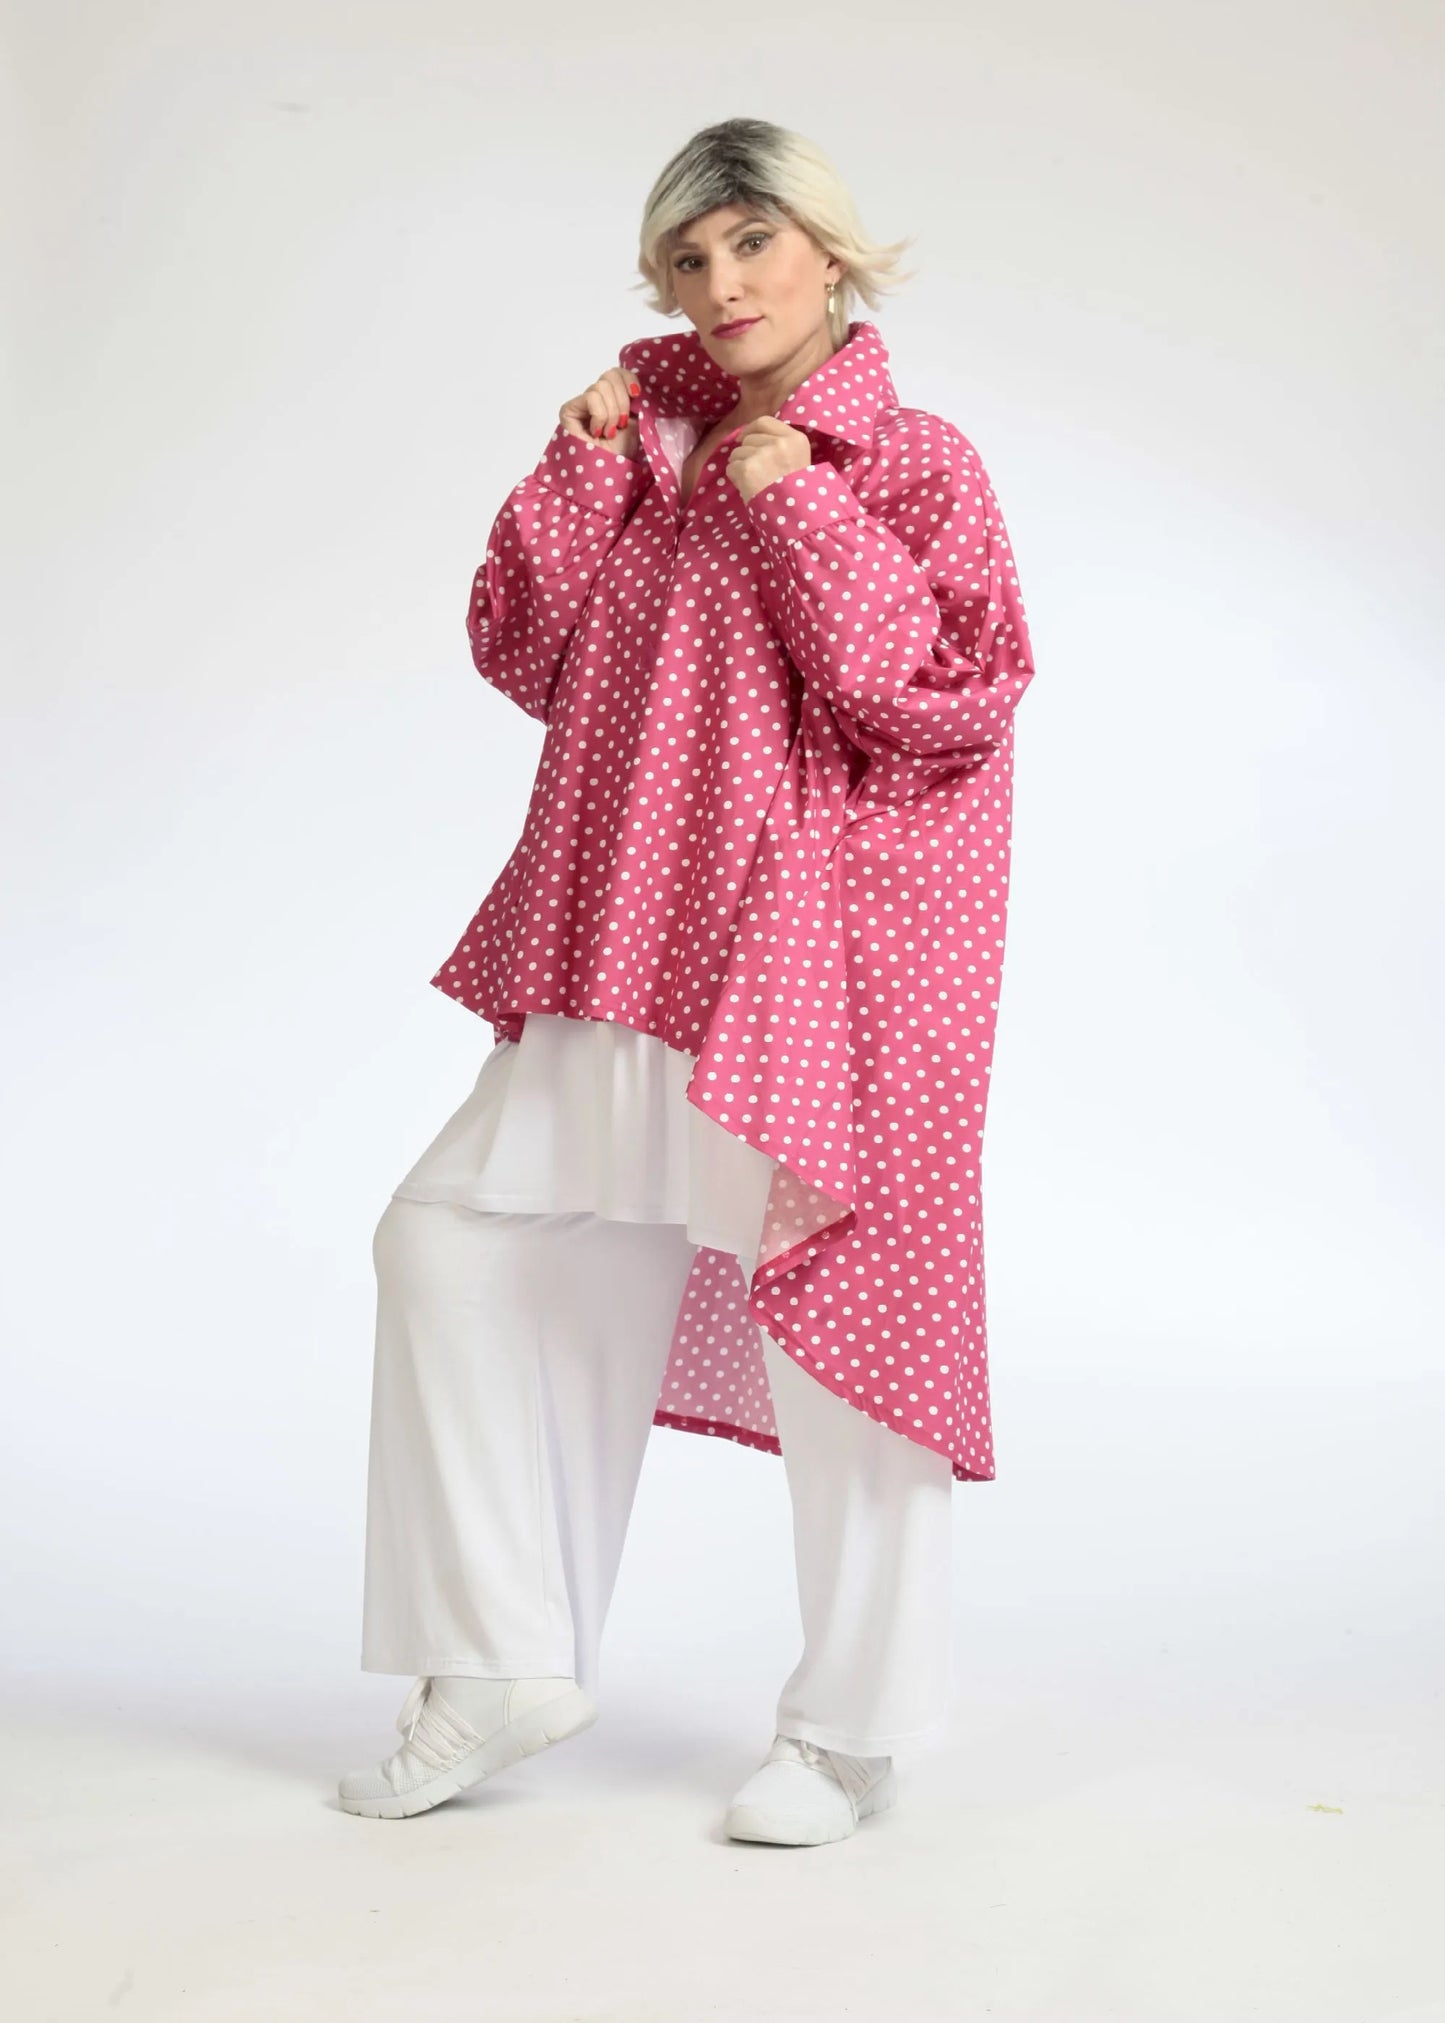 Sommer Bluse in Vokuhila Form aus glatter Popeline Qualität, Freya in Pink-Weiß